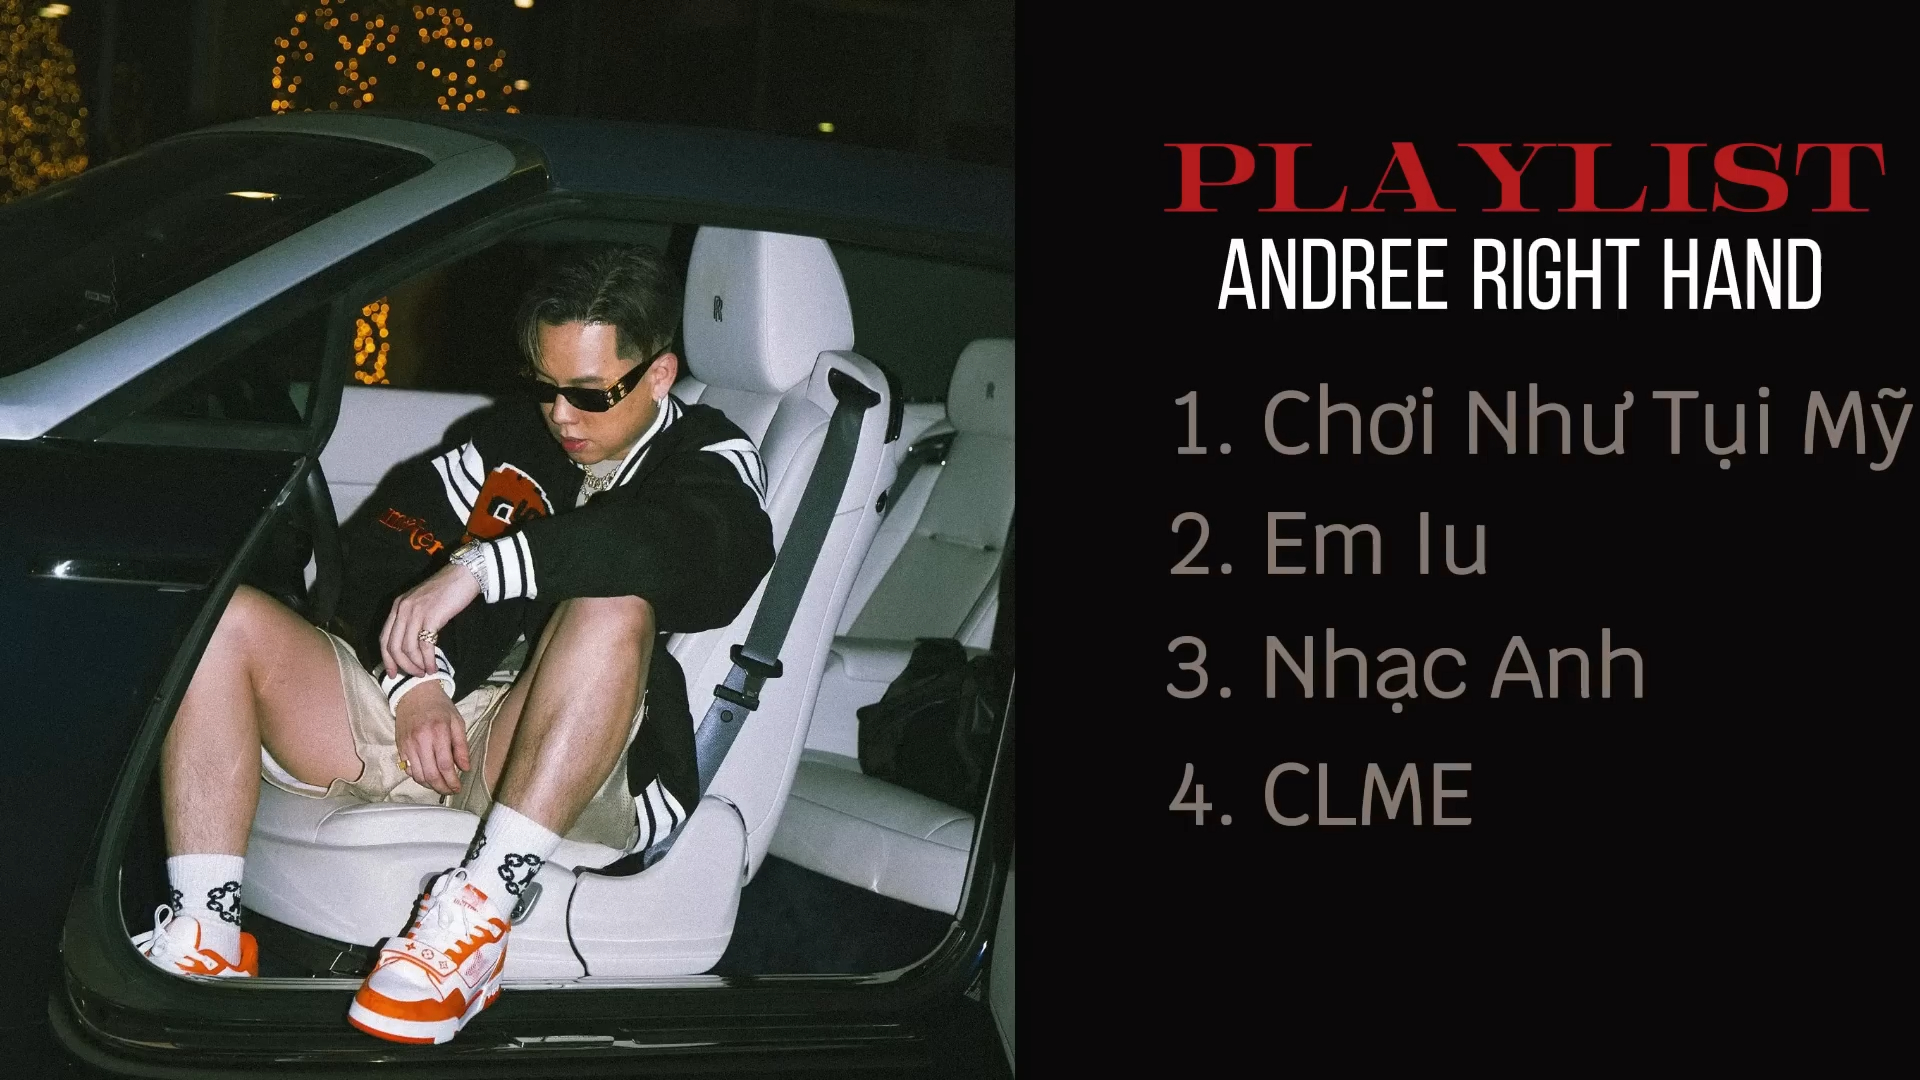 Playlist Andree Right Hand- Chơi Như Tụi Mỹ, Em Iu, Nhạc Anh, CLME - tzmi